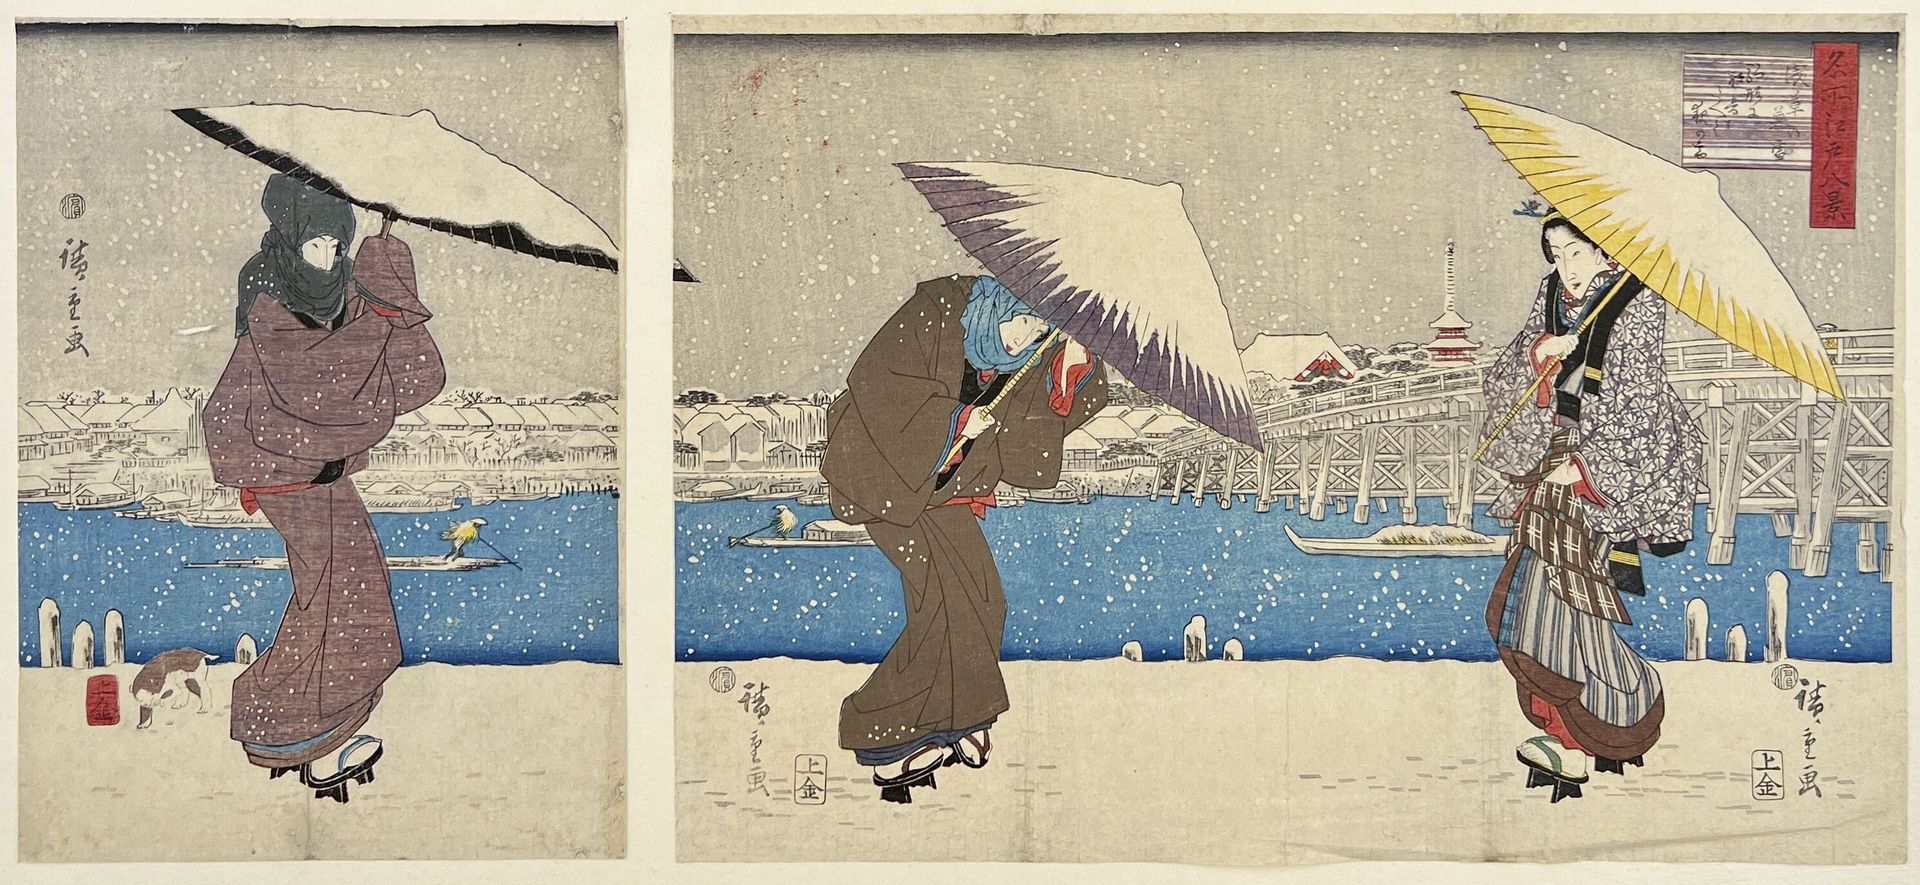 Null 宇川广重 (1797-1858)
江户八景》系列中的三联画，板块为 "浅草之波"，浅草的雪夜。
签名：Hiroshige ga，出版商：Joshuya&hellip;